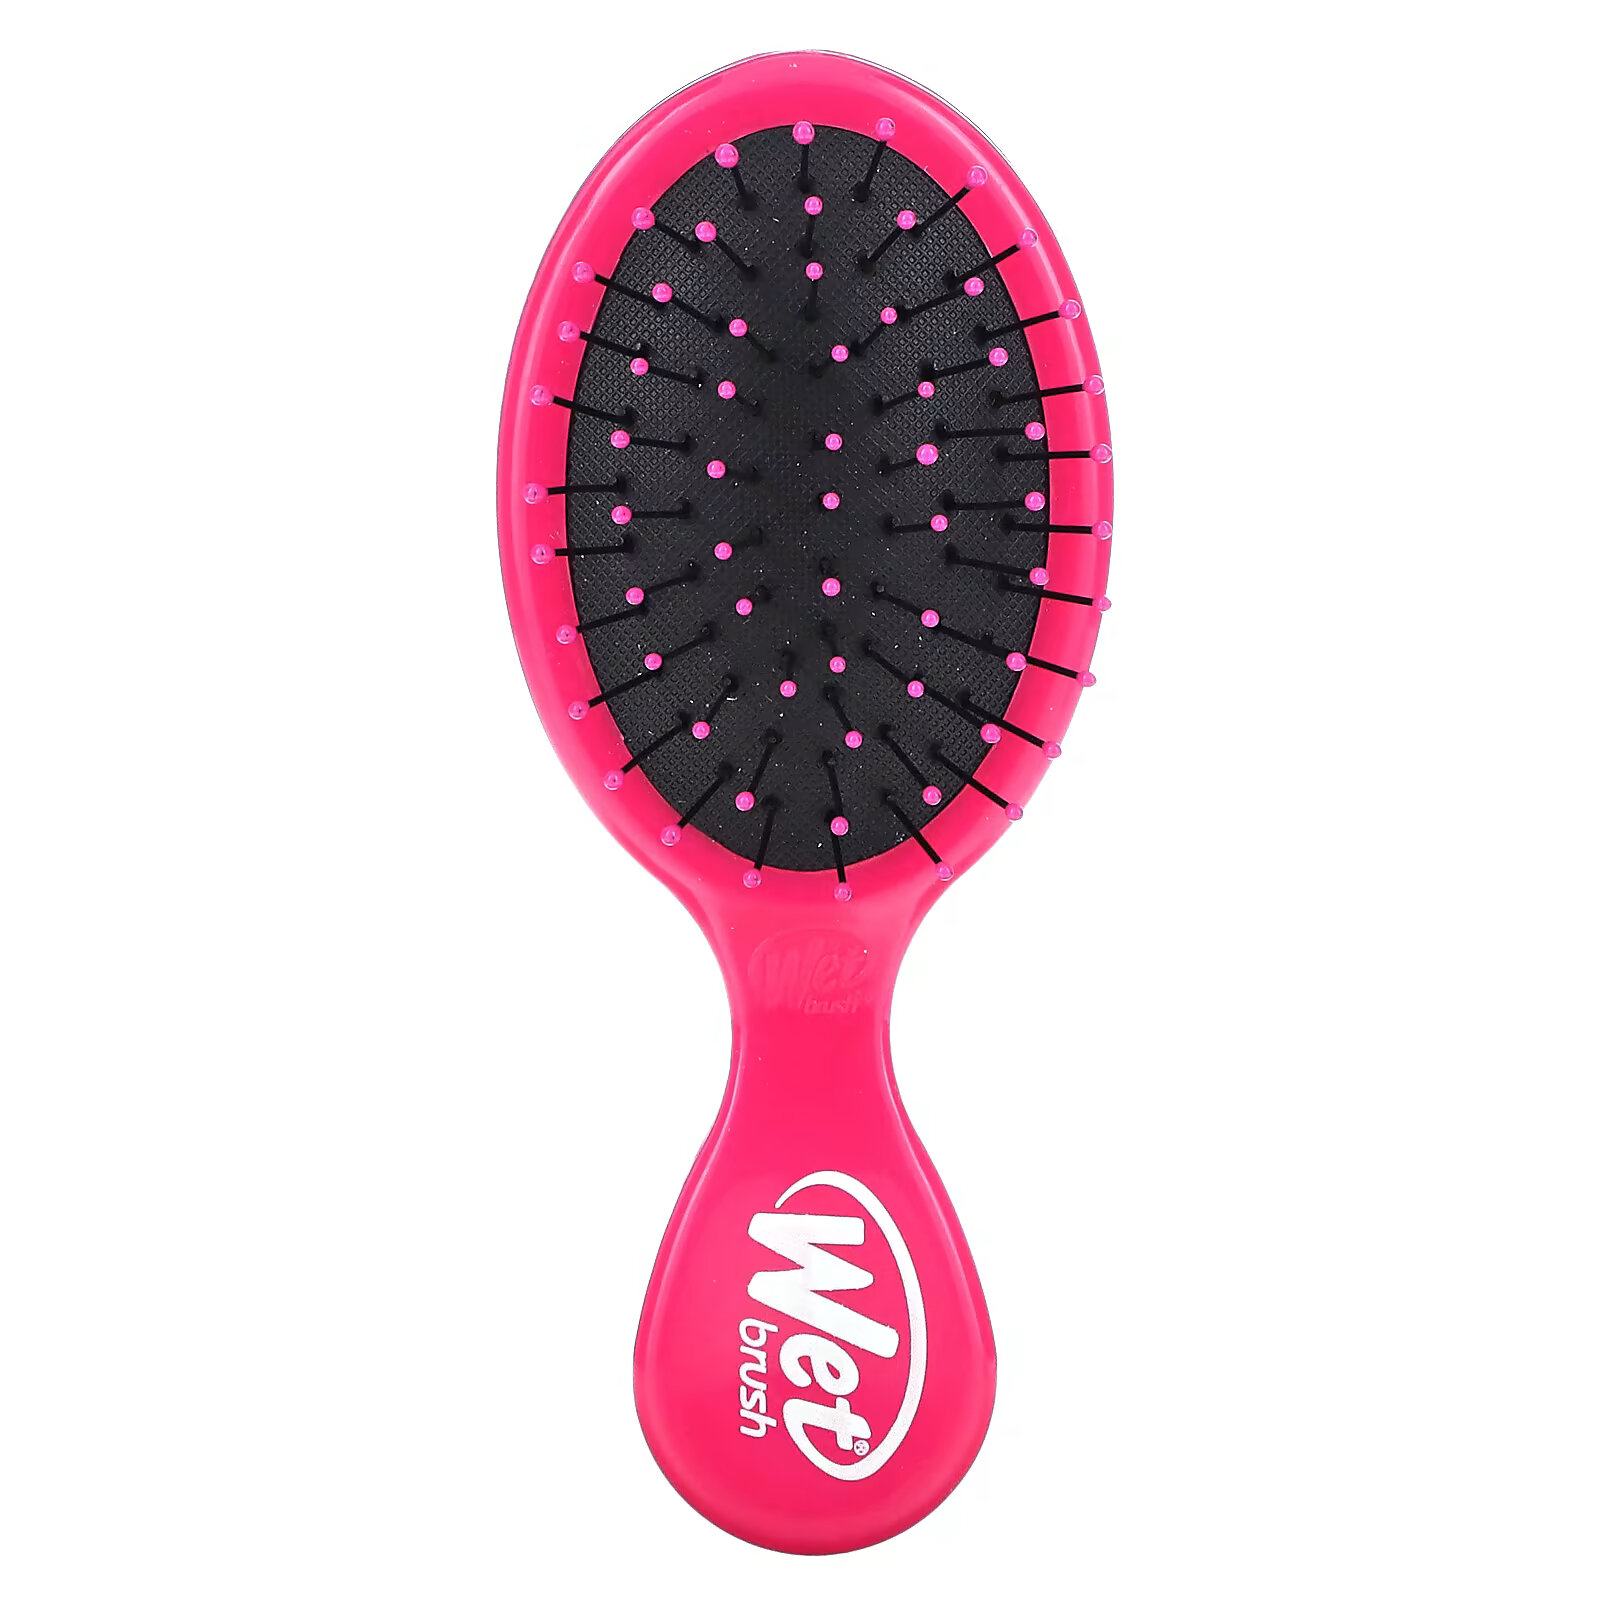 Wet Brush, мини-расческа для облегчения расчесывания, розовая, 1 шт. wet brush средство для расчесывания волос черный 1 шт